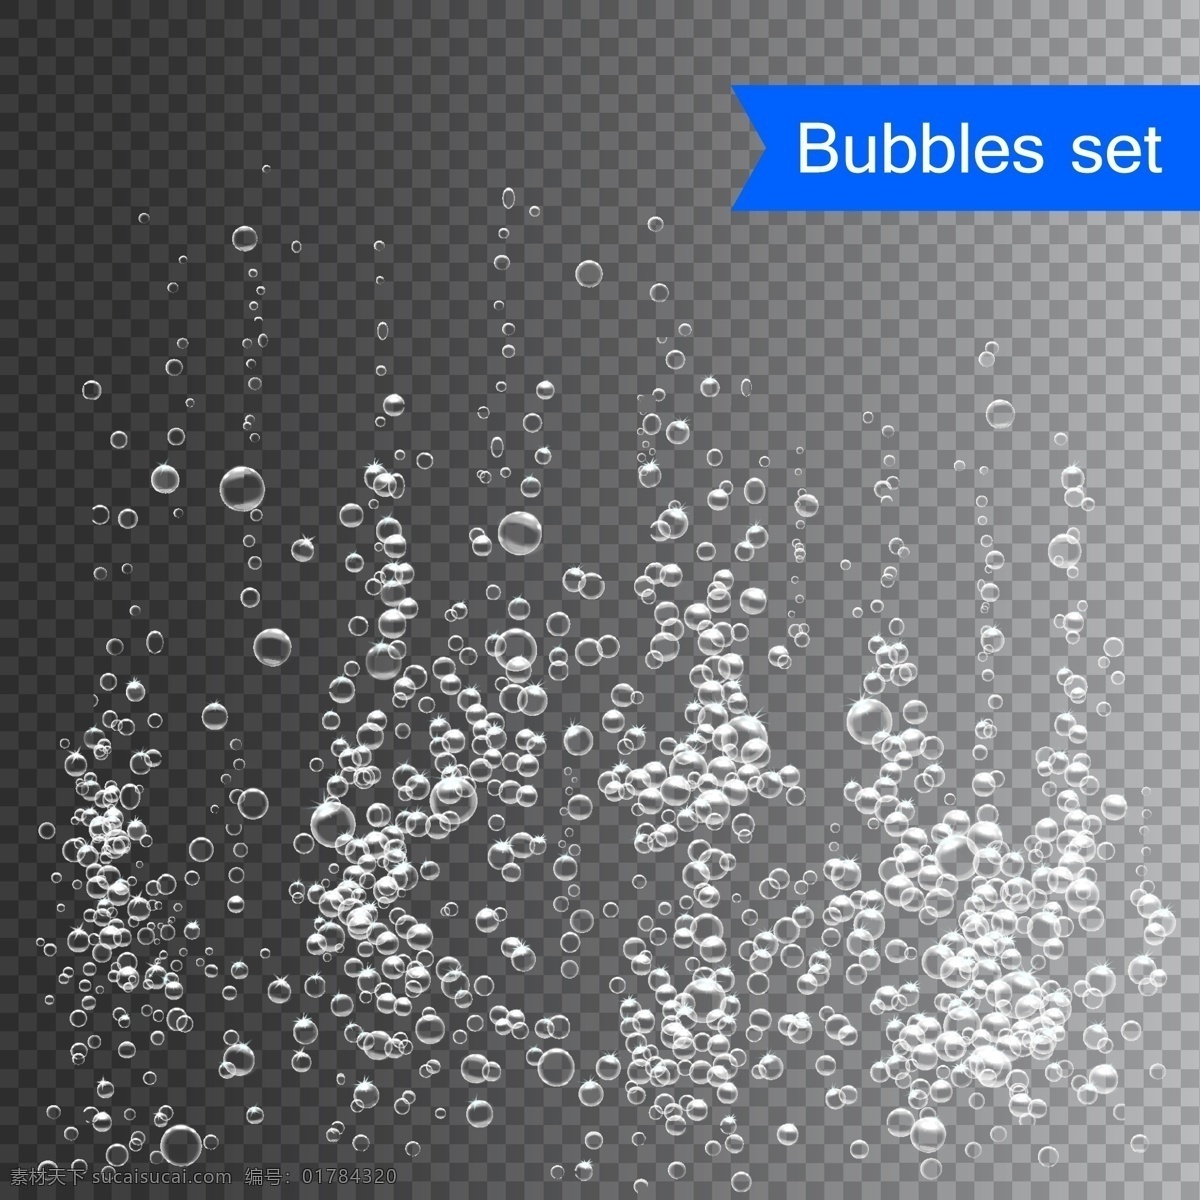 矢量 水珠 气泡 矢量水珠 气泡素材 水泡 透明泡泡 吹泡泡 上升的气泡 海底世界 海水泡泡 装饰元素 矢量水泡 丝带飘带 背景底纹 生物世界